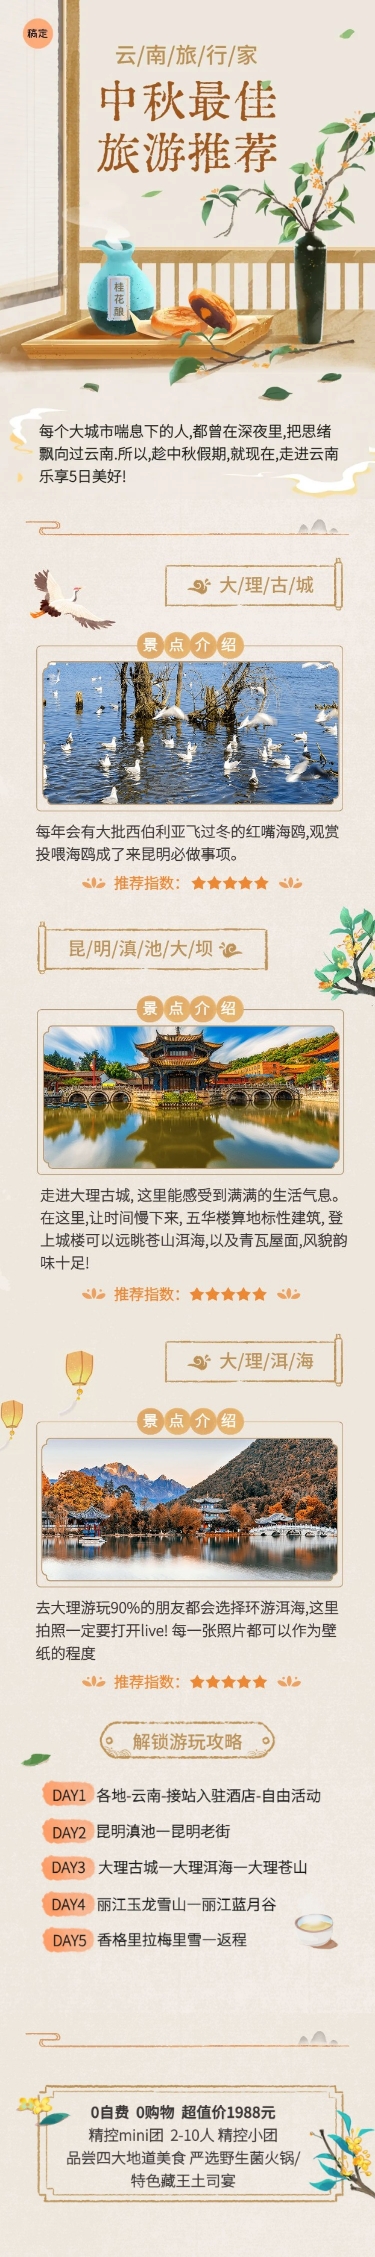 中秋节旅游节日营销水彩风文章长图